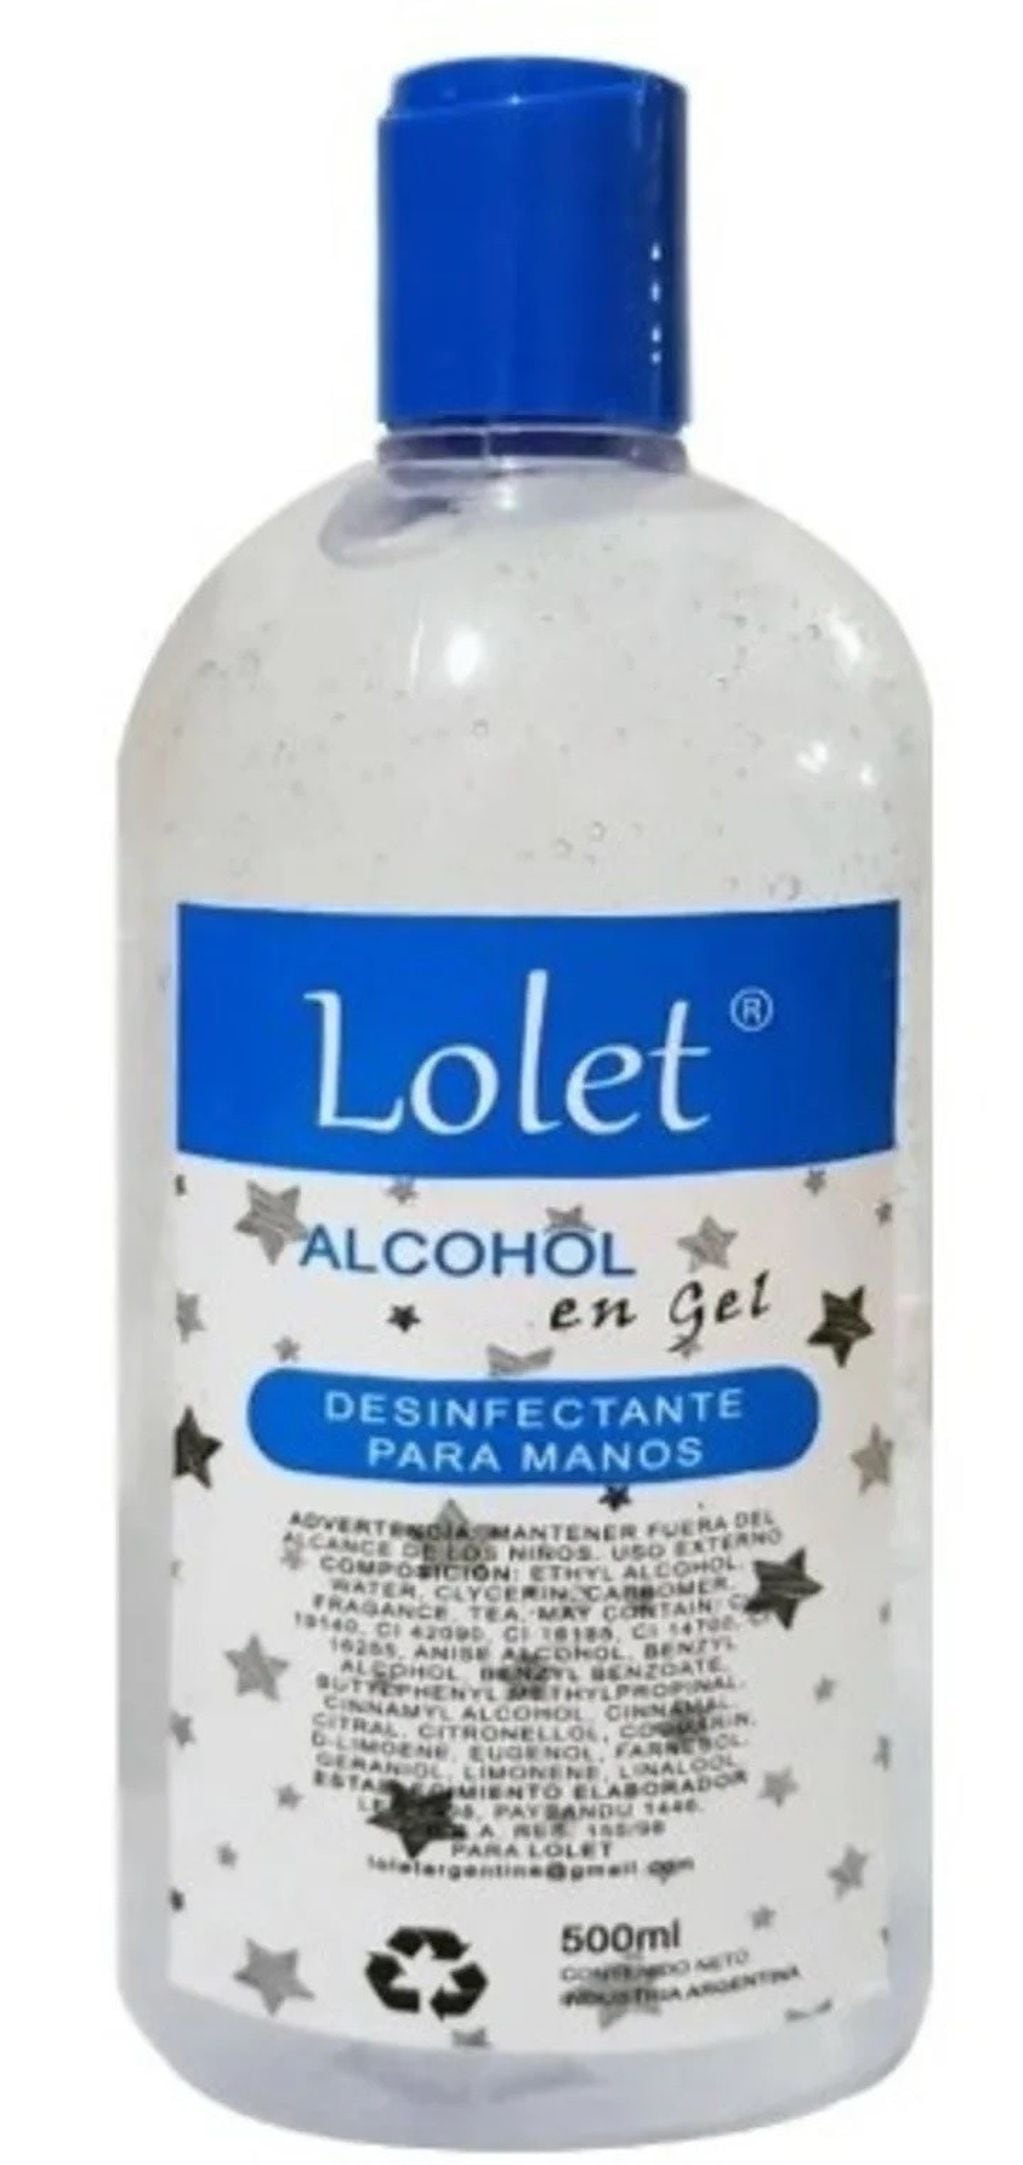 Alcohol en gel "Lolet" (Web)